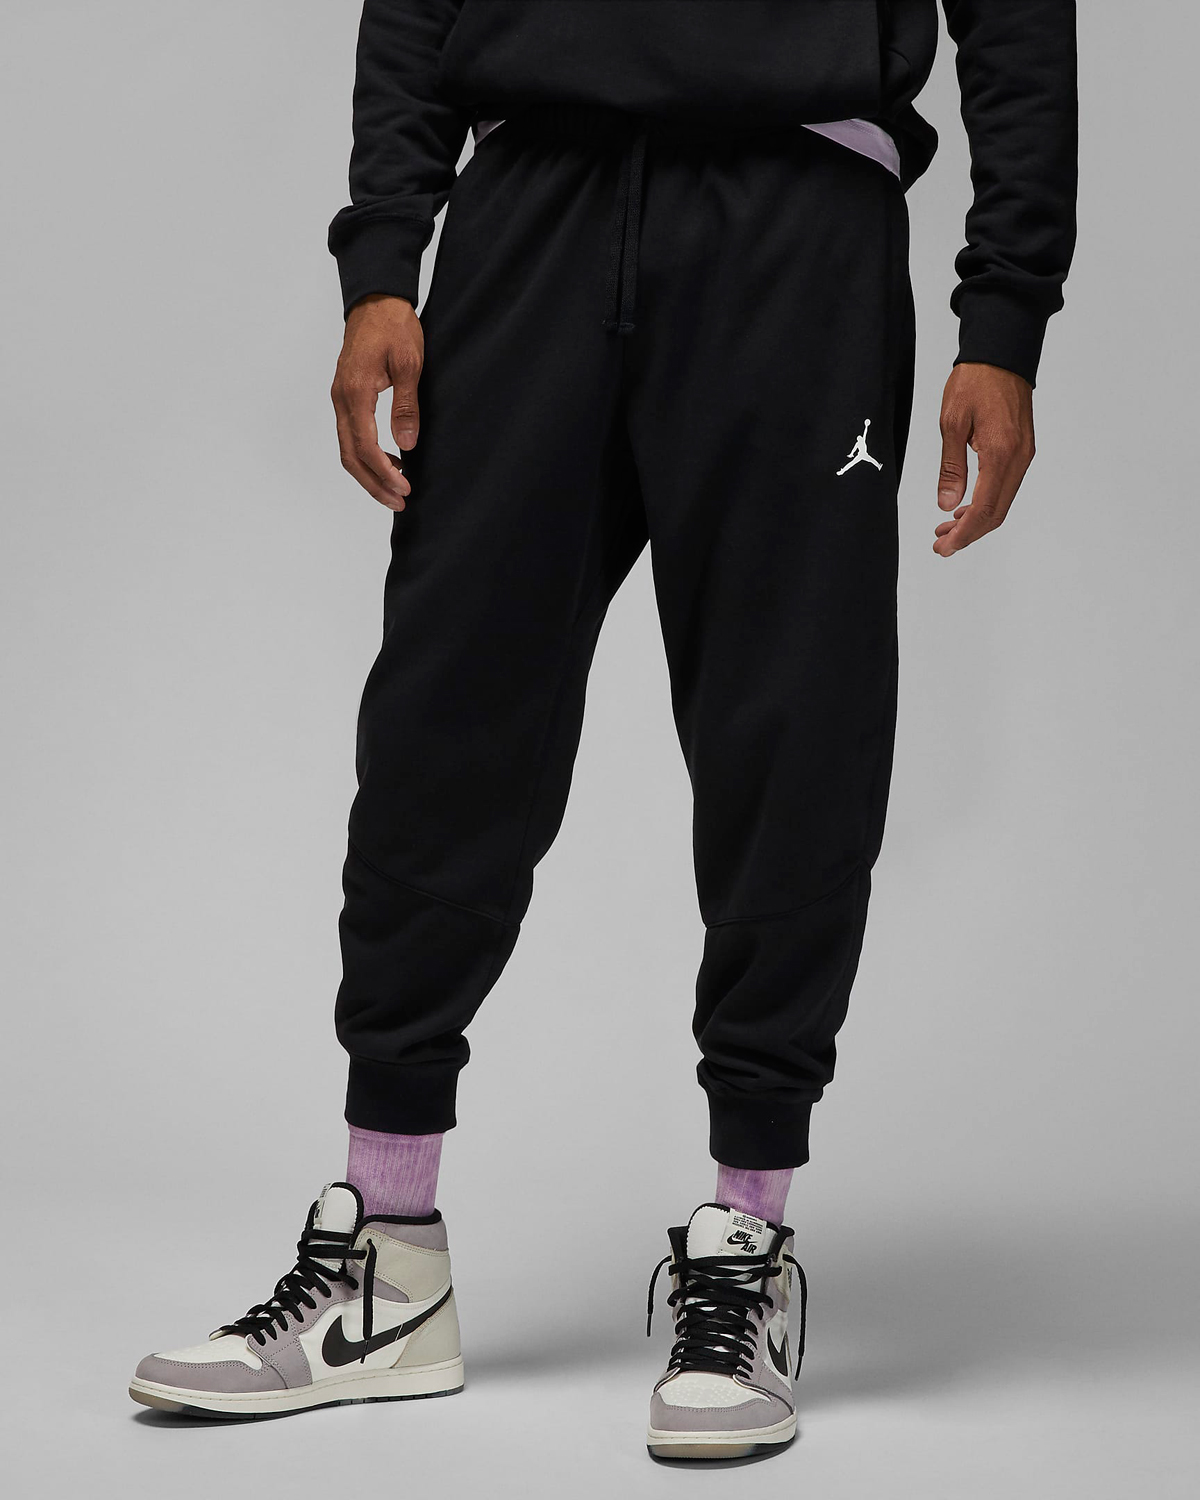 Jordan-Dri-Fit-Sport-Fleece-Pants-Black-White-1